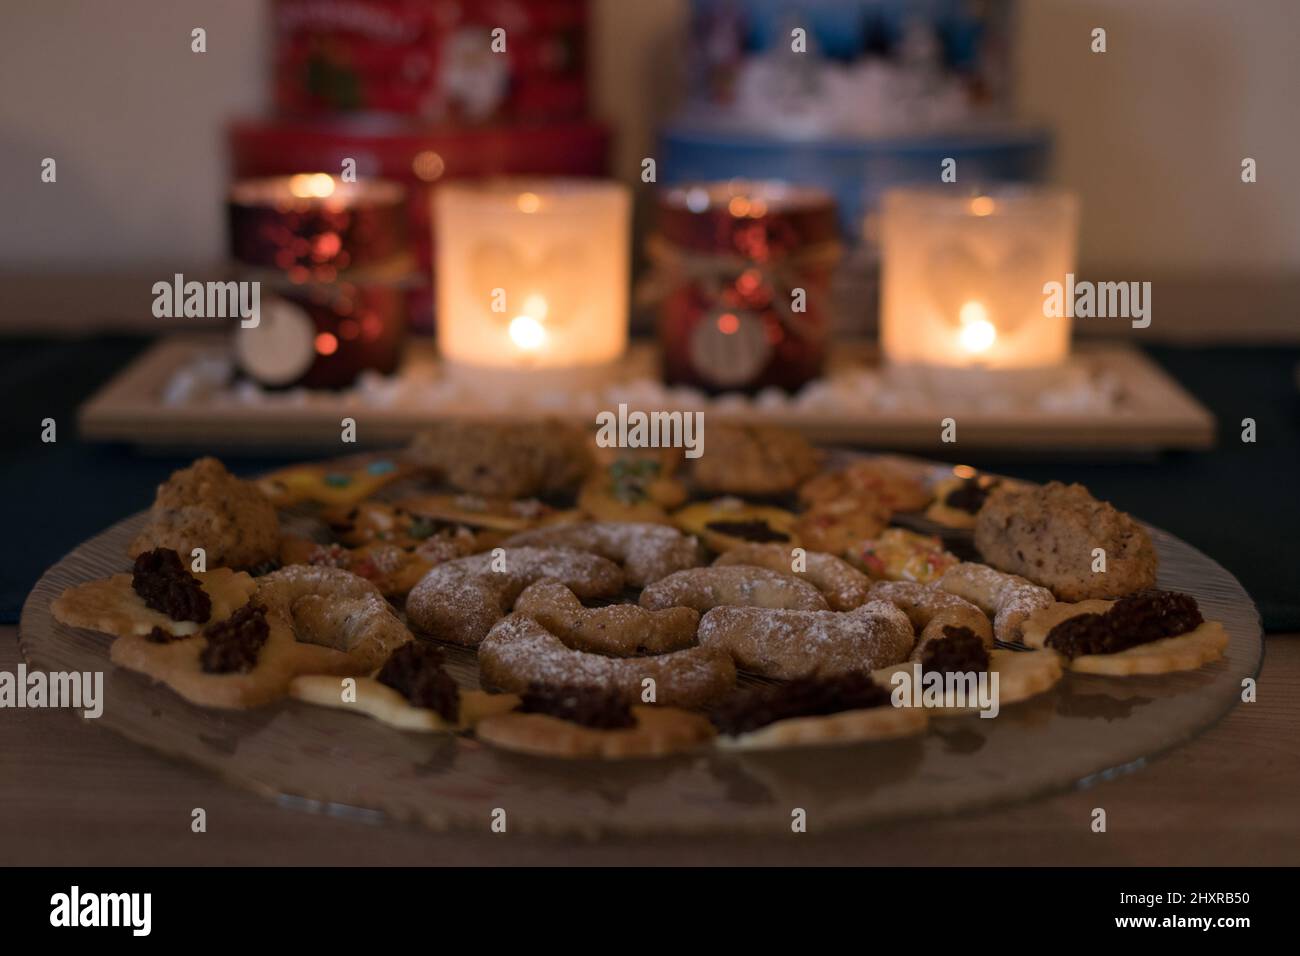 Biscotti di Natale con candele d'avvento e vasetti di biscotti sullo sfondo Foto Stock